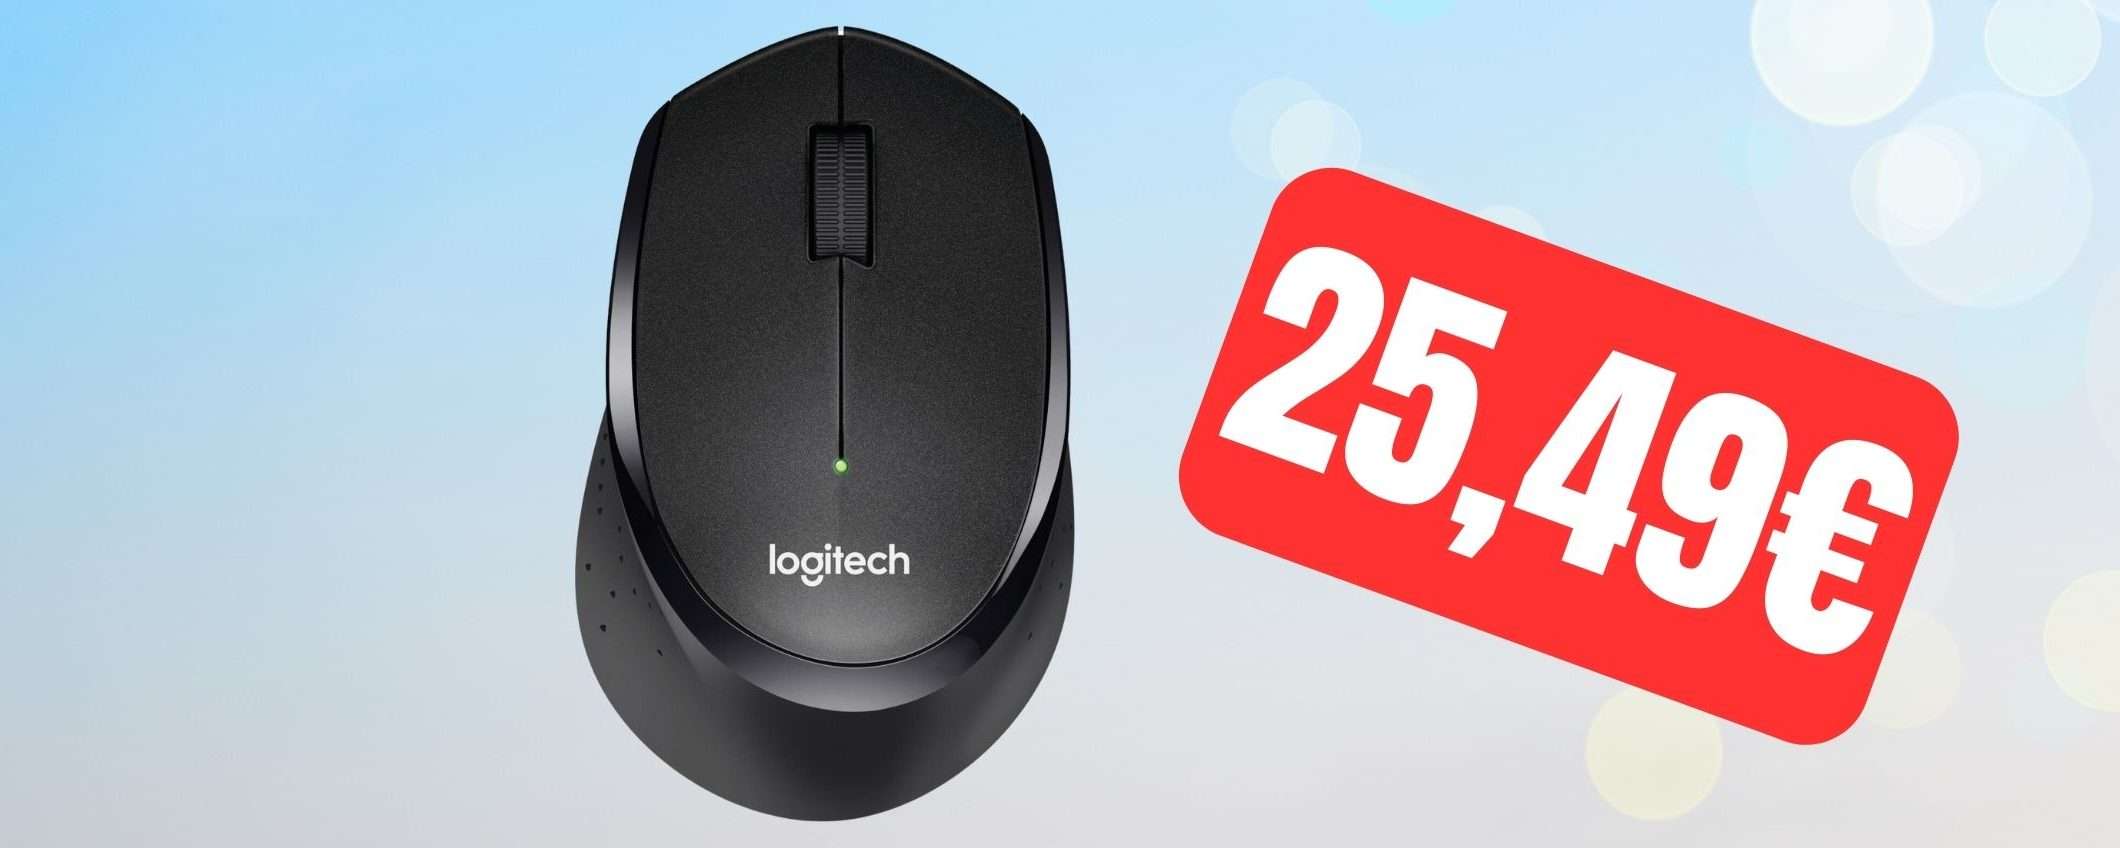 Mouse Logitech wireless e silenzioso ad un SUPER PREZZO su Amazon